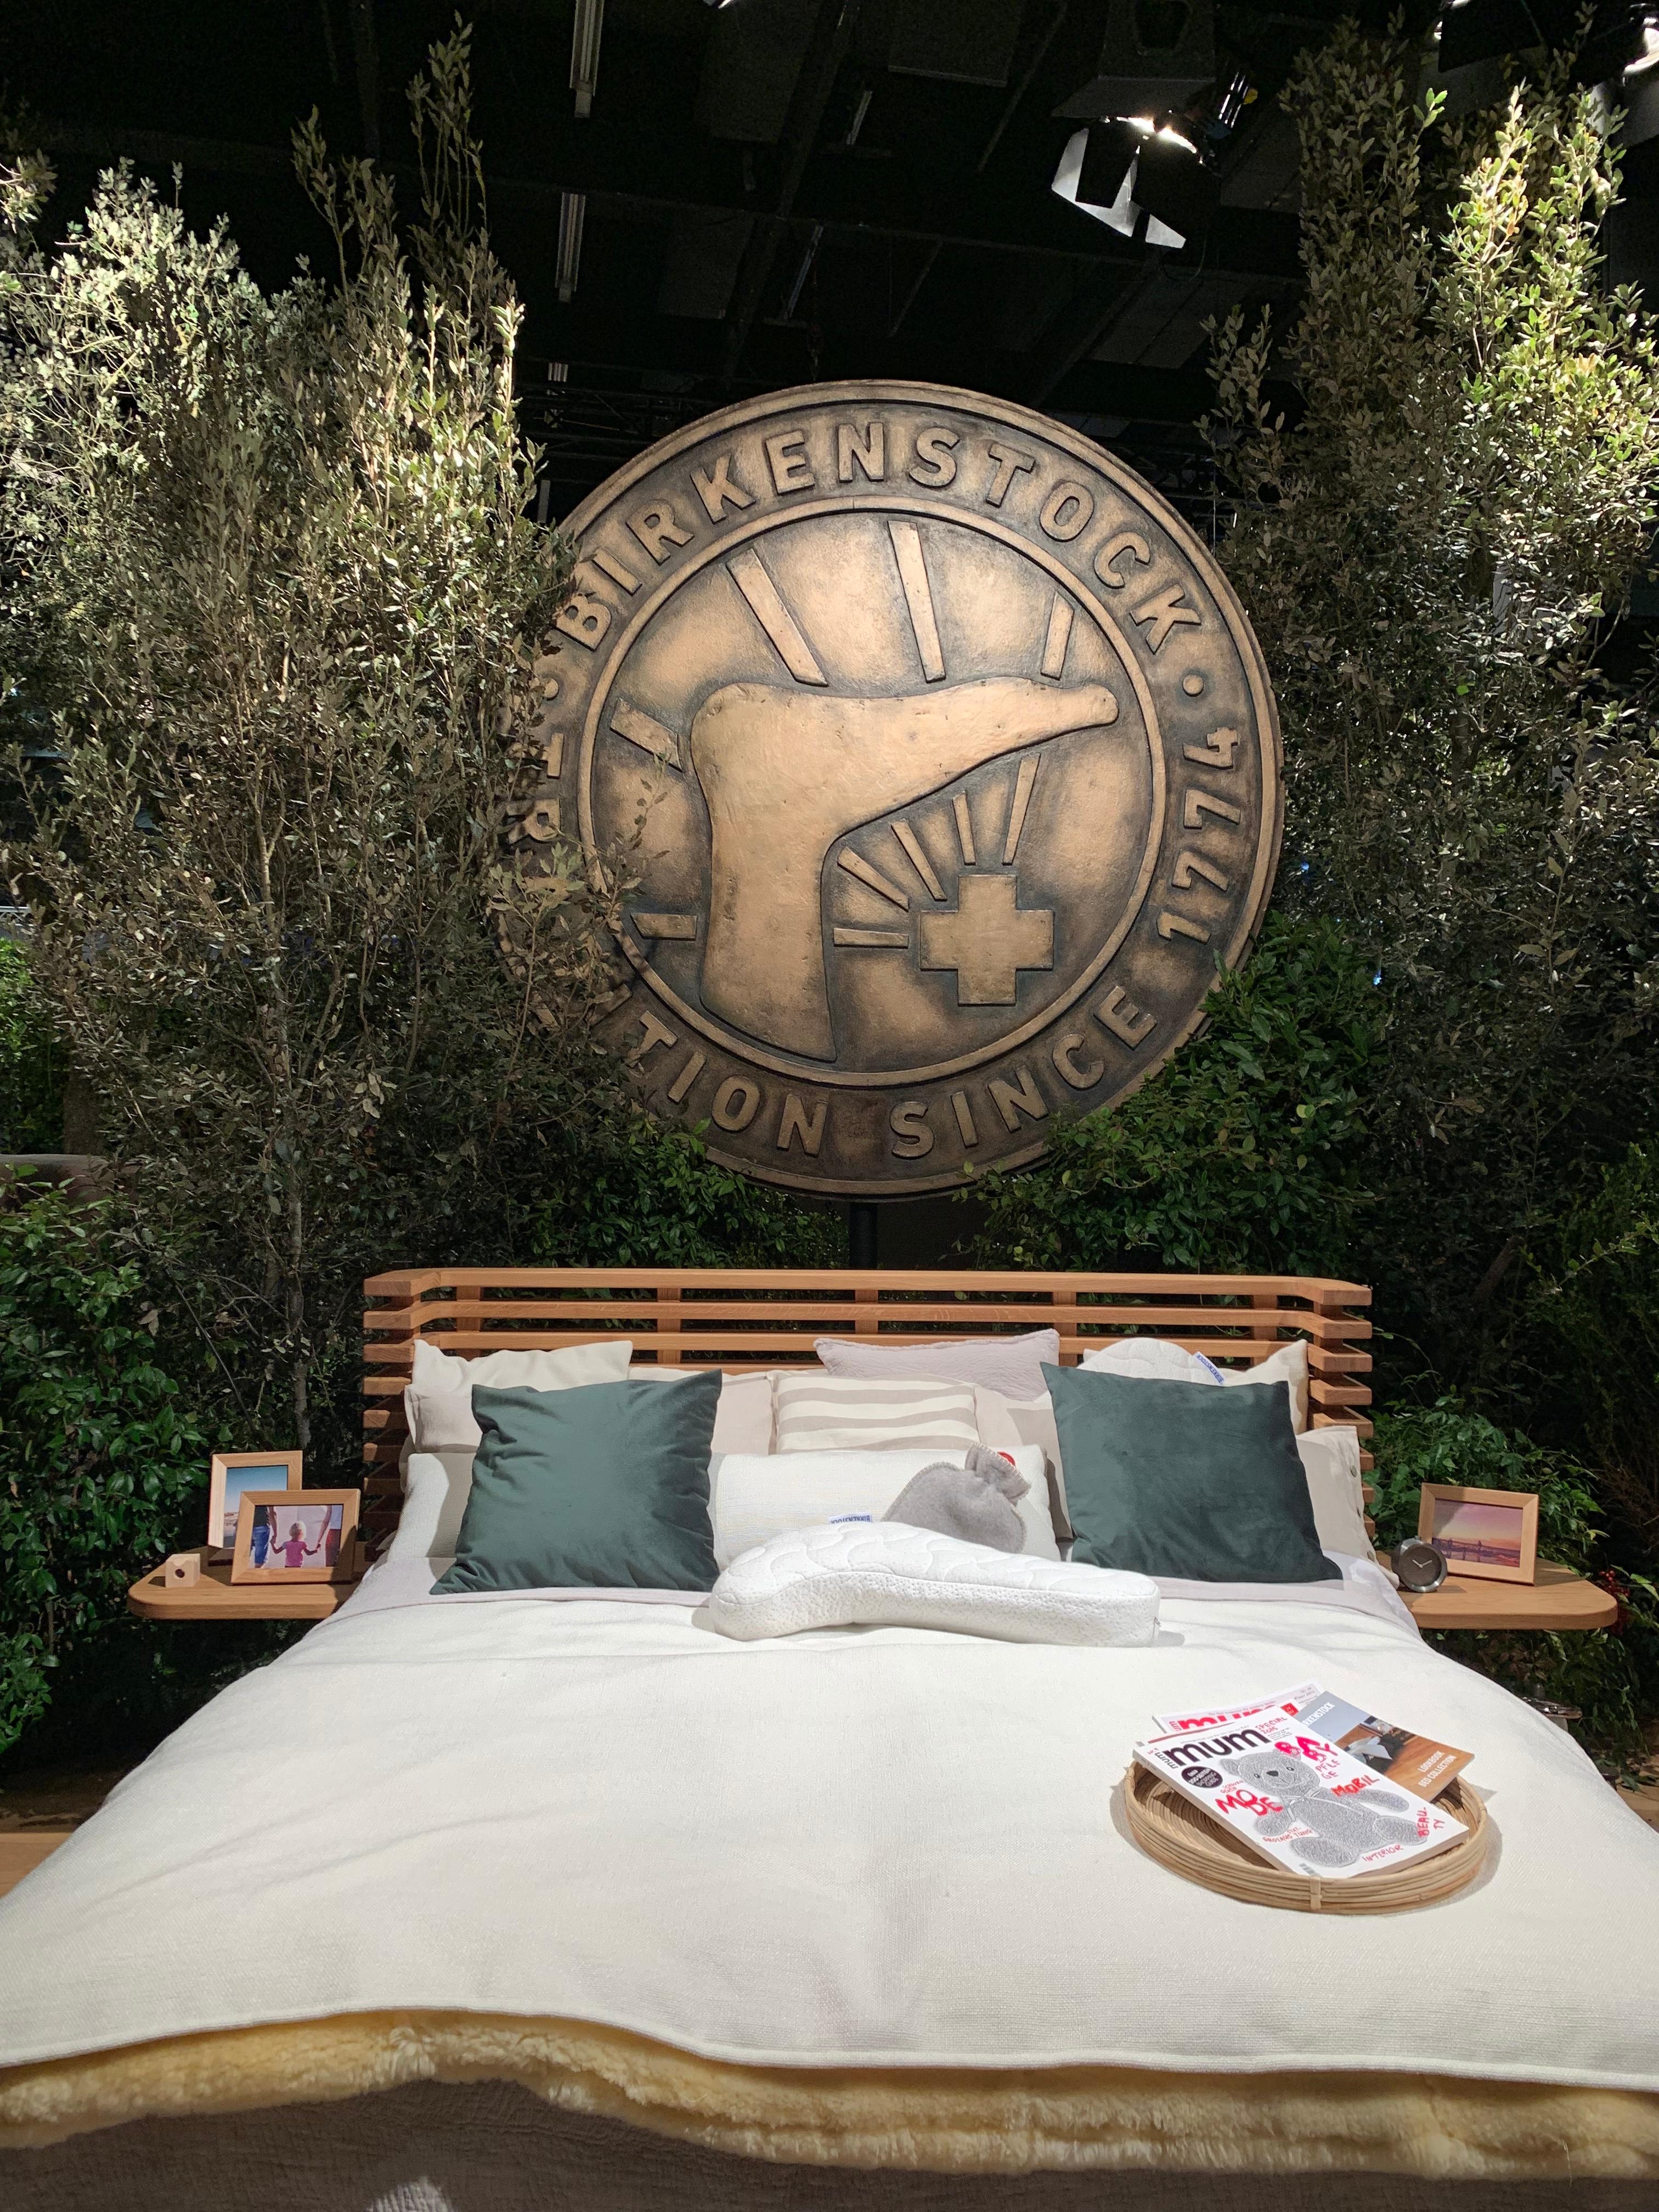 Dieses wunderschöne neue Bett von #birkenstock hat ein ganz besonderes Feature zu bieten... #imm2019 #imm